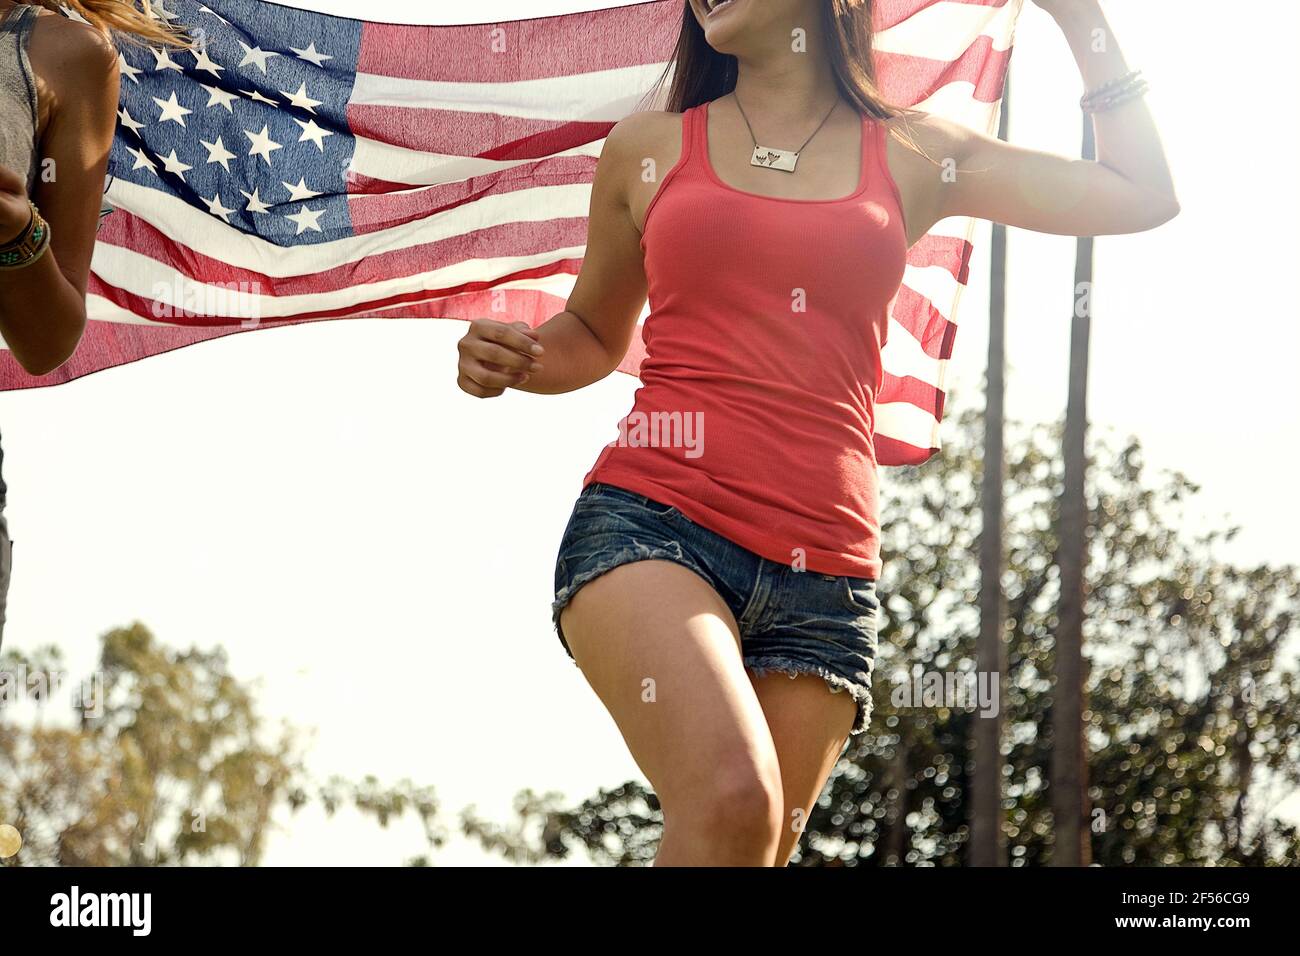 Mujeres que tienen bandera americana mientras corren en el parque durante el sol día Foto de stock